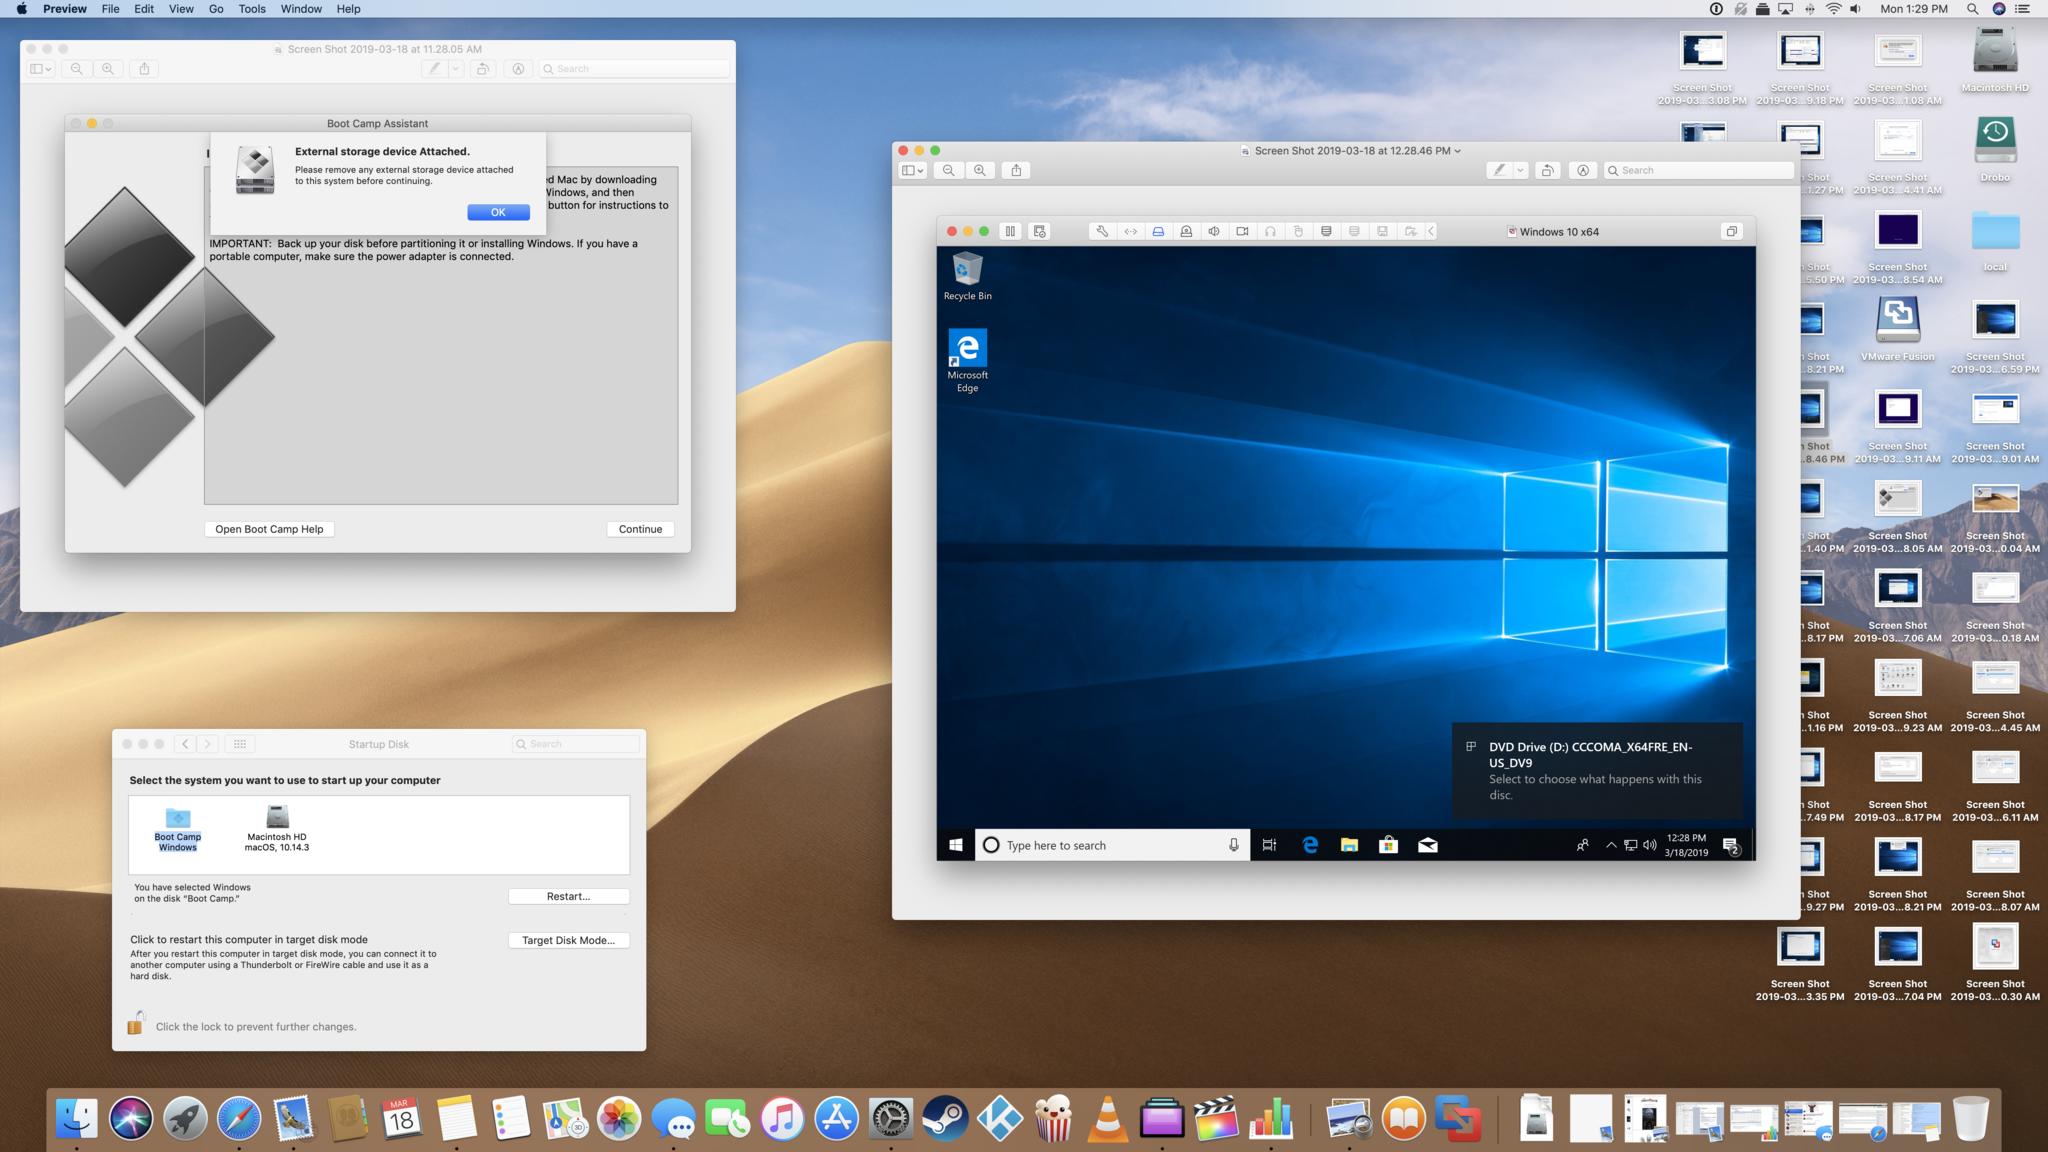 Mac mini windows 10 pomme pidou